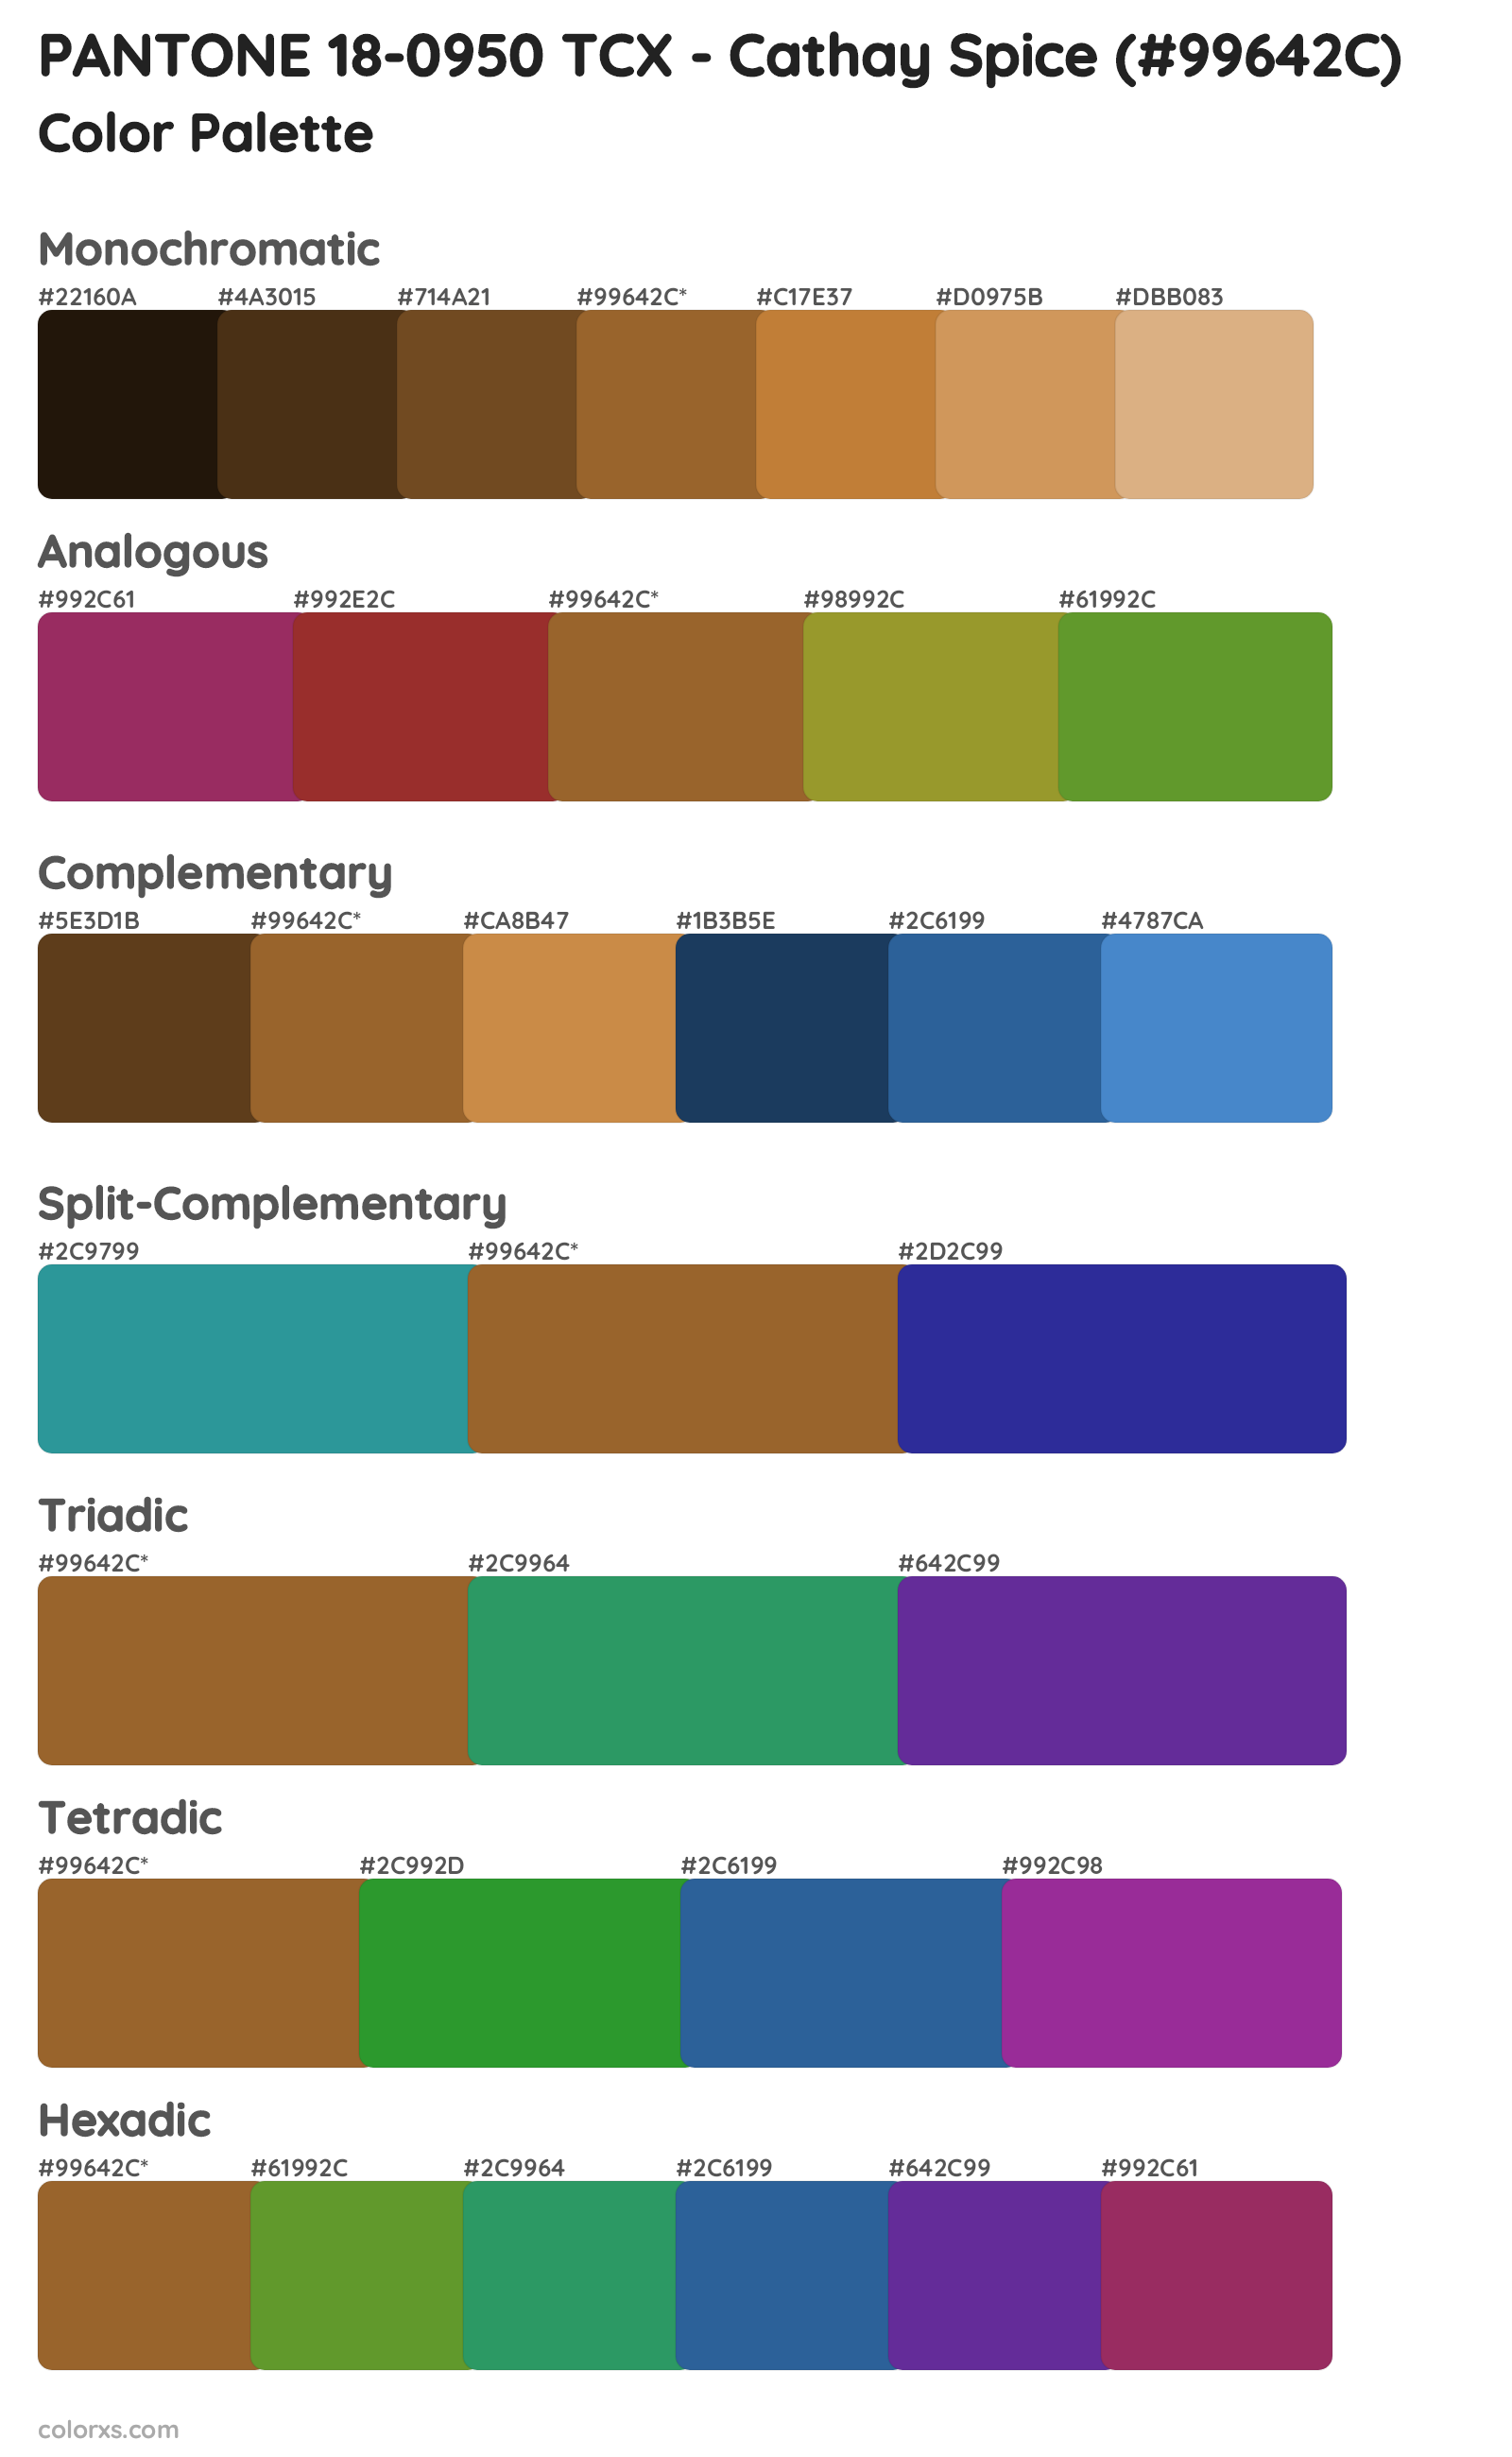 PANTONE 18-0950 TCX - Cathay Spice Color Scheme Palettes